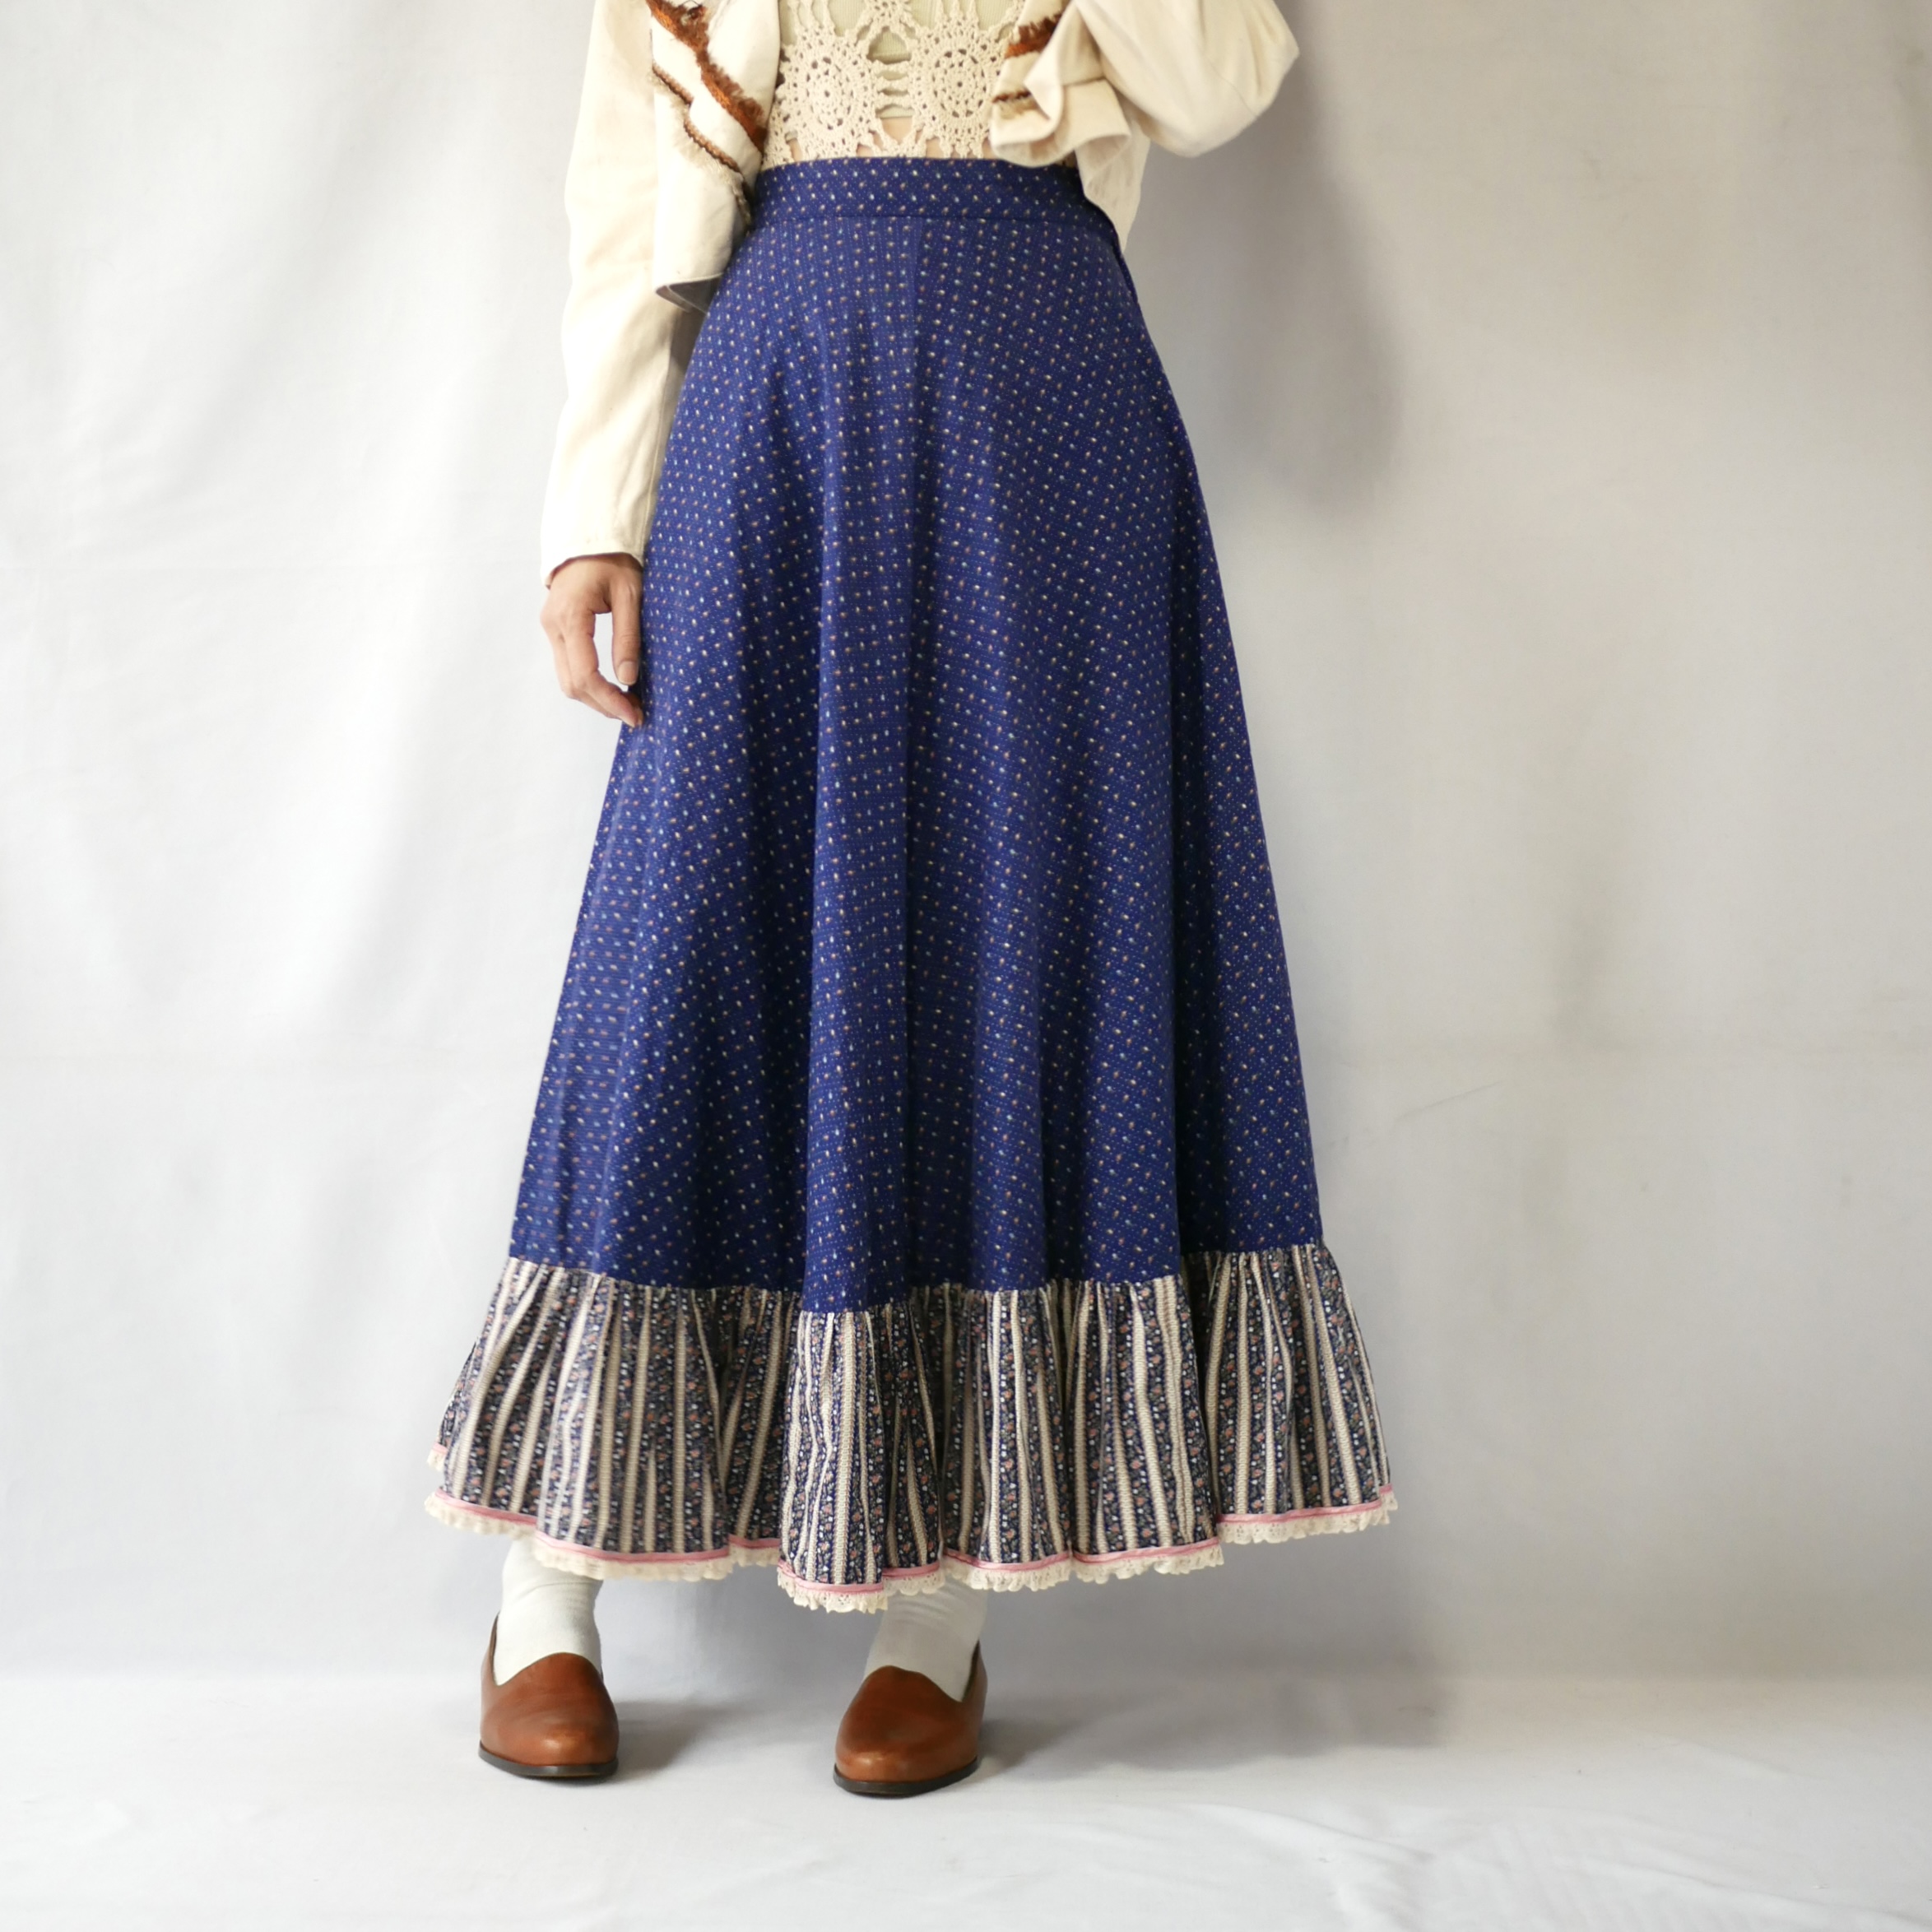 新着順70s vintage skirt ヴィンテージ スカート 花柄 Mサイズ